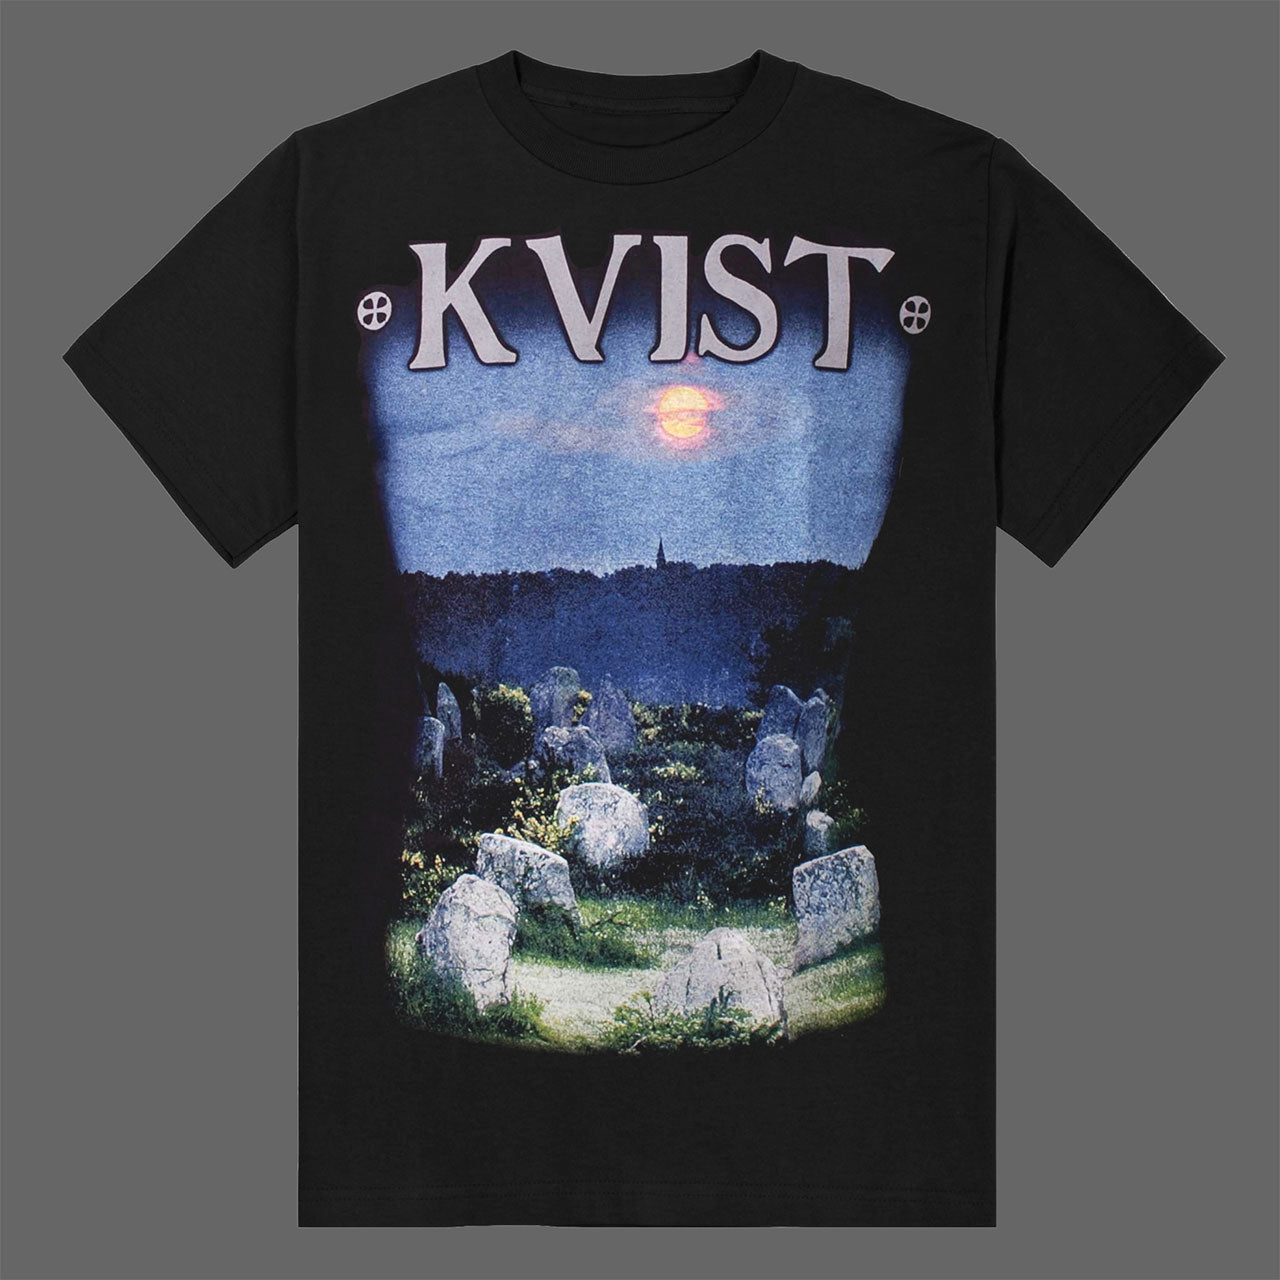 Kvist - For kunsten maa vi evig vike (T-Shirt)